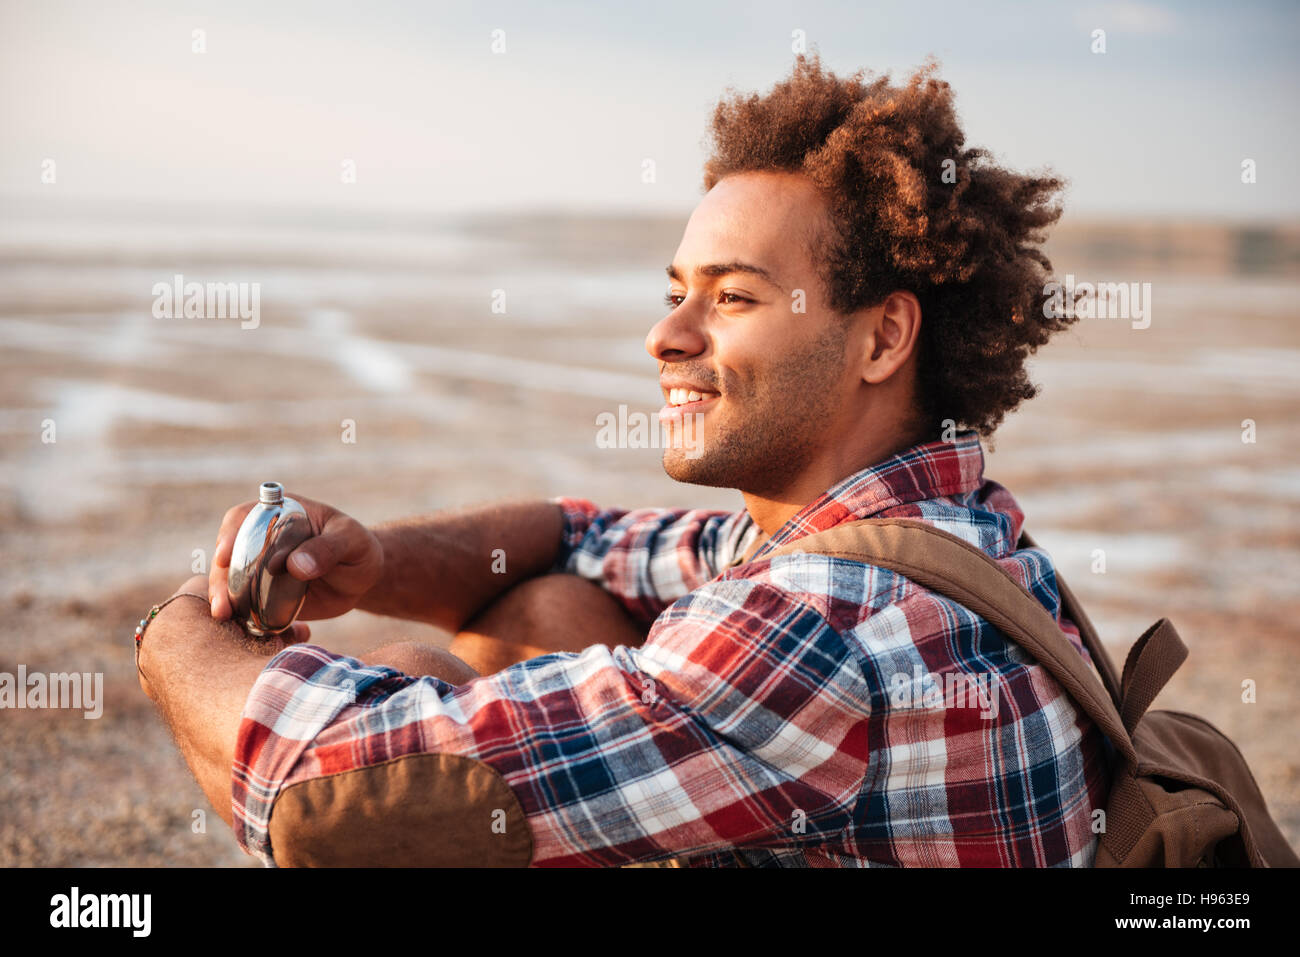 Smiling african jeune homme sac à dos avec de l'alcool flasque sur la plage Banque D'Images